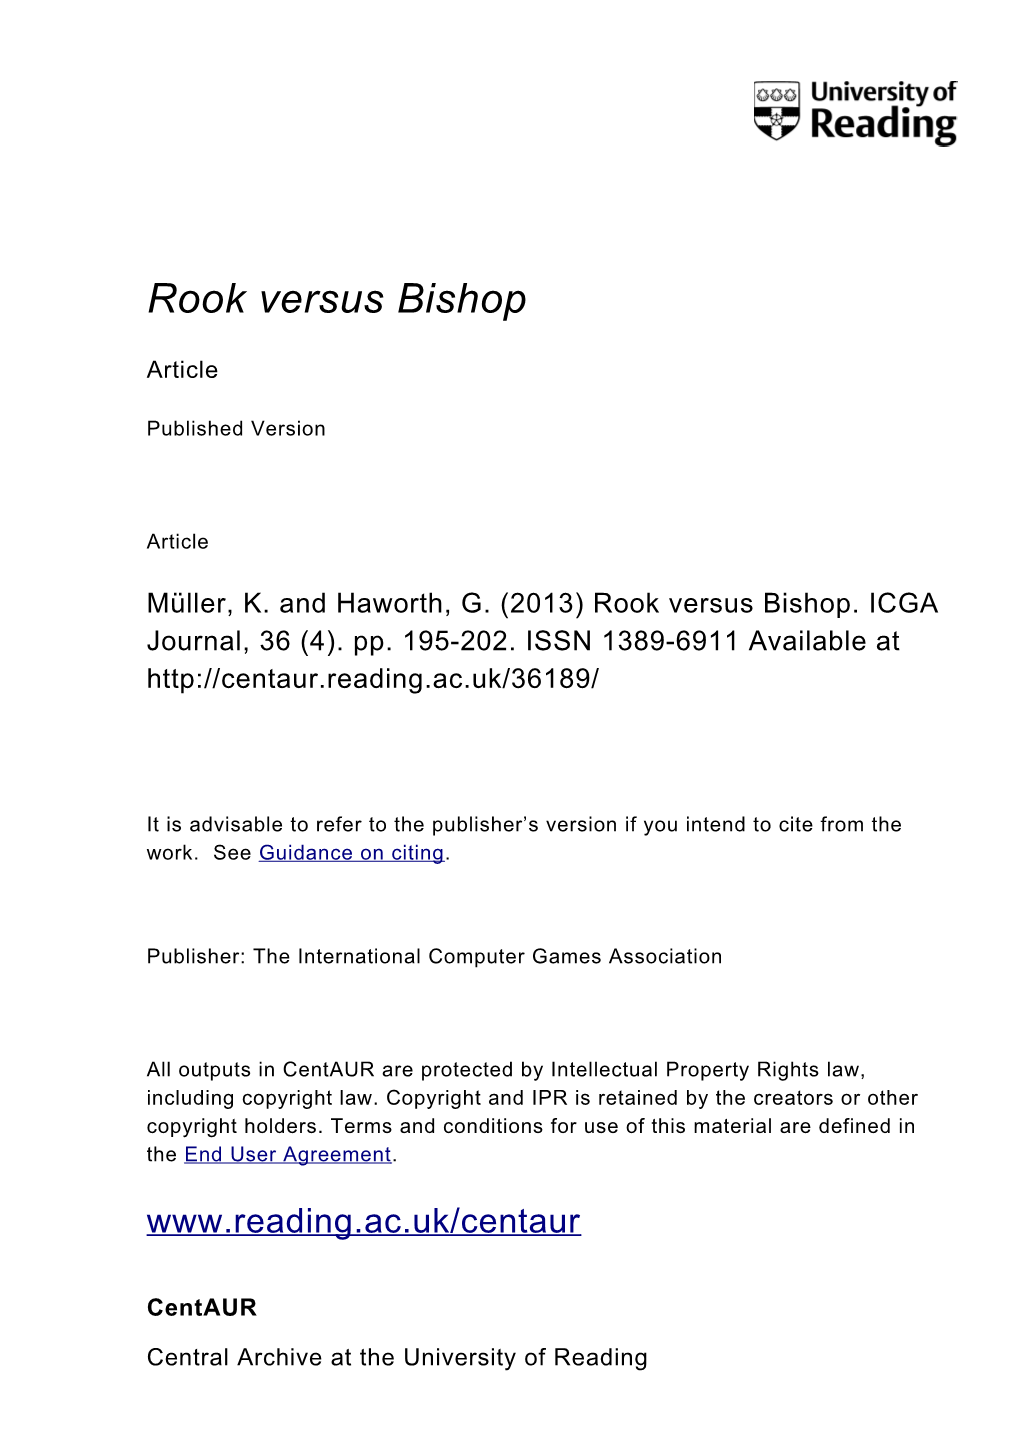 Rook Versus Bishop